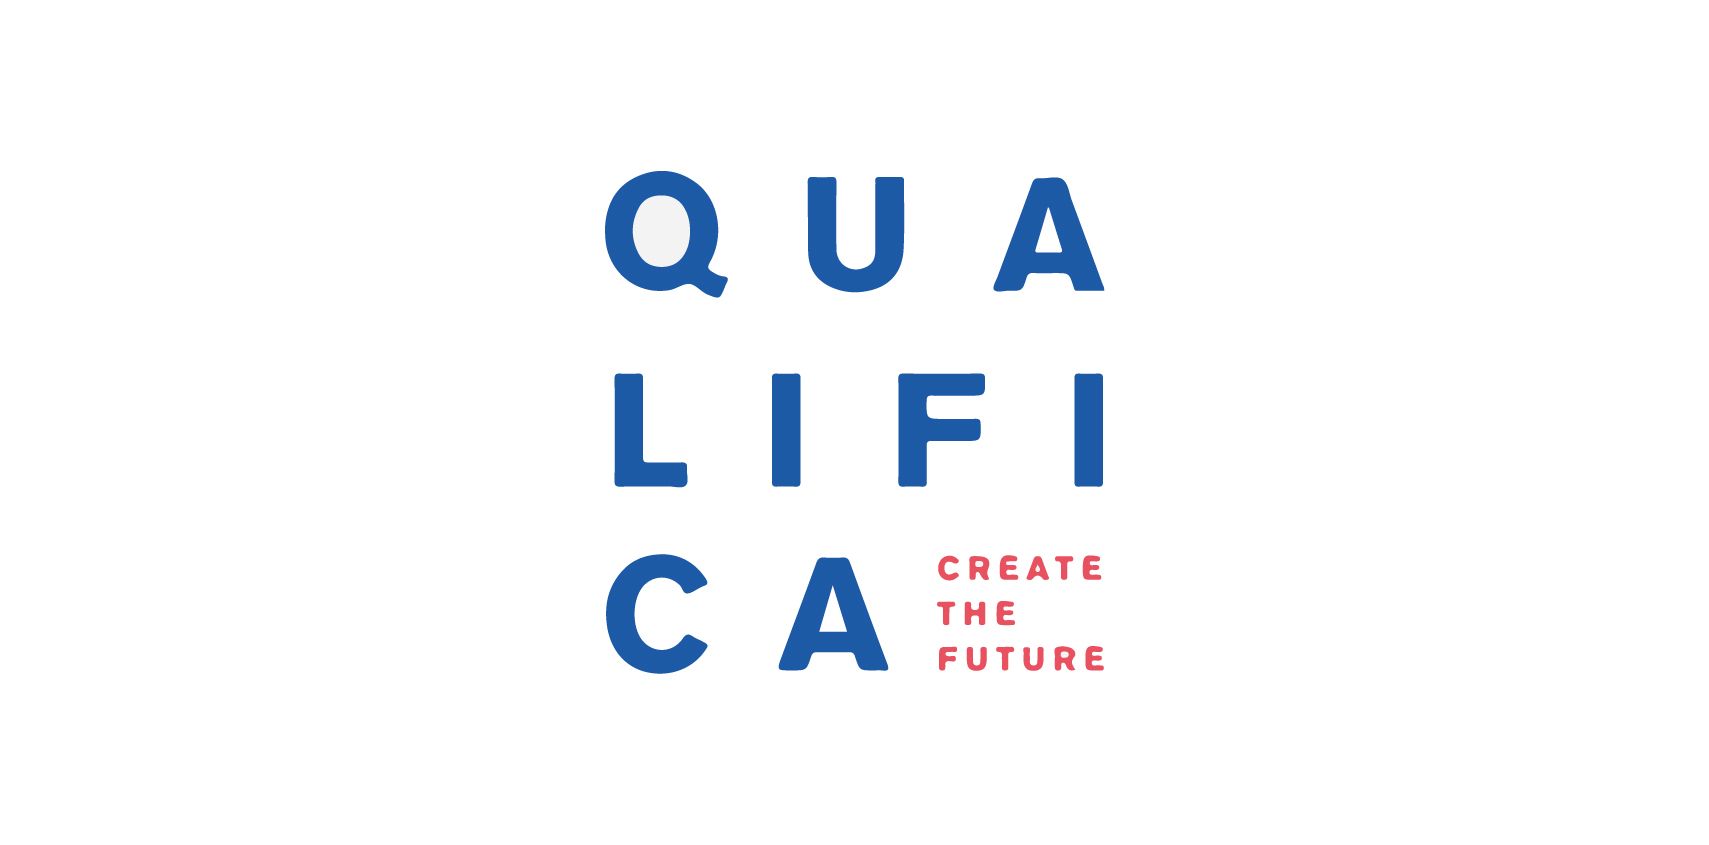 Logo for the Qualifica fair in Porto - Create The Future